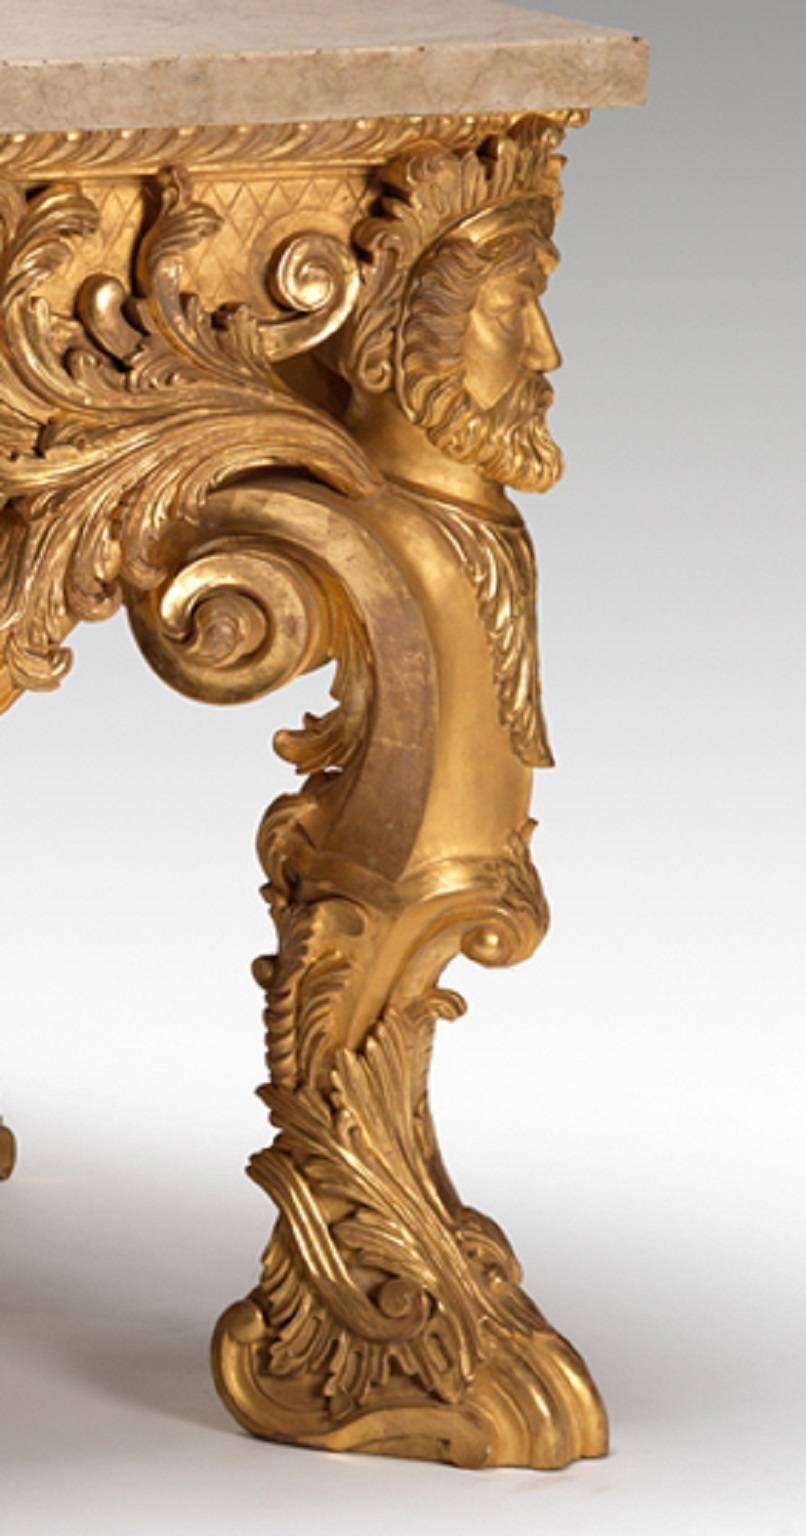 Table console en bois doré exceptionnellement sculpté d'après un modèle de Matthias Lock. La frise sculptée est soutenue par des pieds en forme d'Herm centrés par un buste sculpté de Diane. L'ensemble de la table est richement sculpté de rocailles,